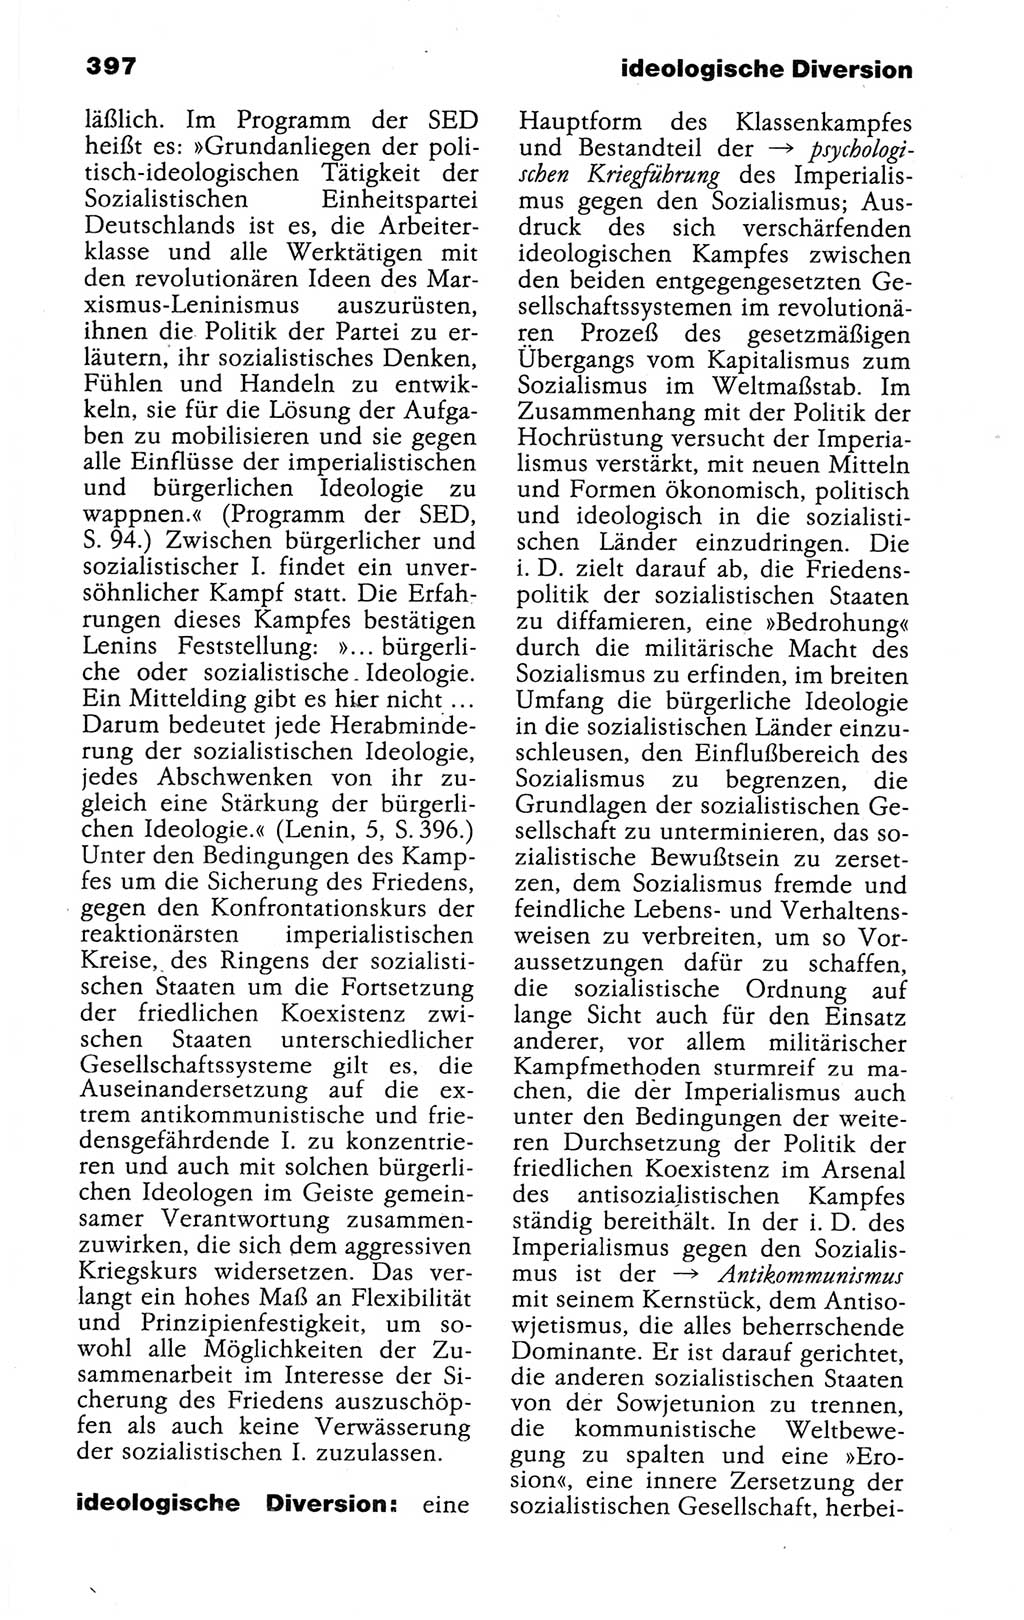 Kleines politisches Wörterbuch [Deutsche Demokratische Republik (DDR)] 1988, Seite 397 (Kl. pol. Wb. DDR 1988, S. 397)